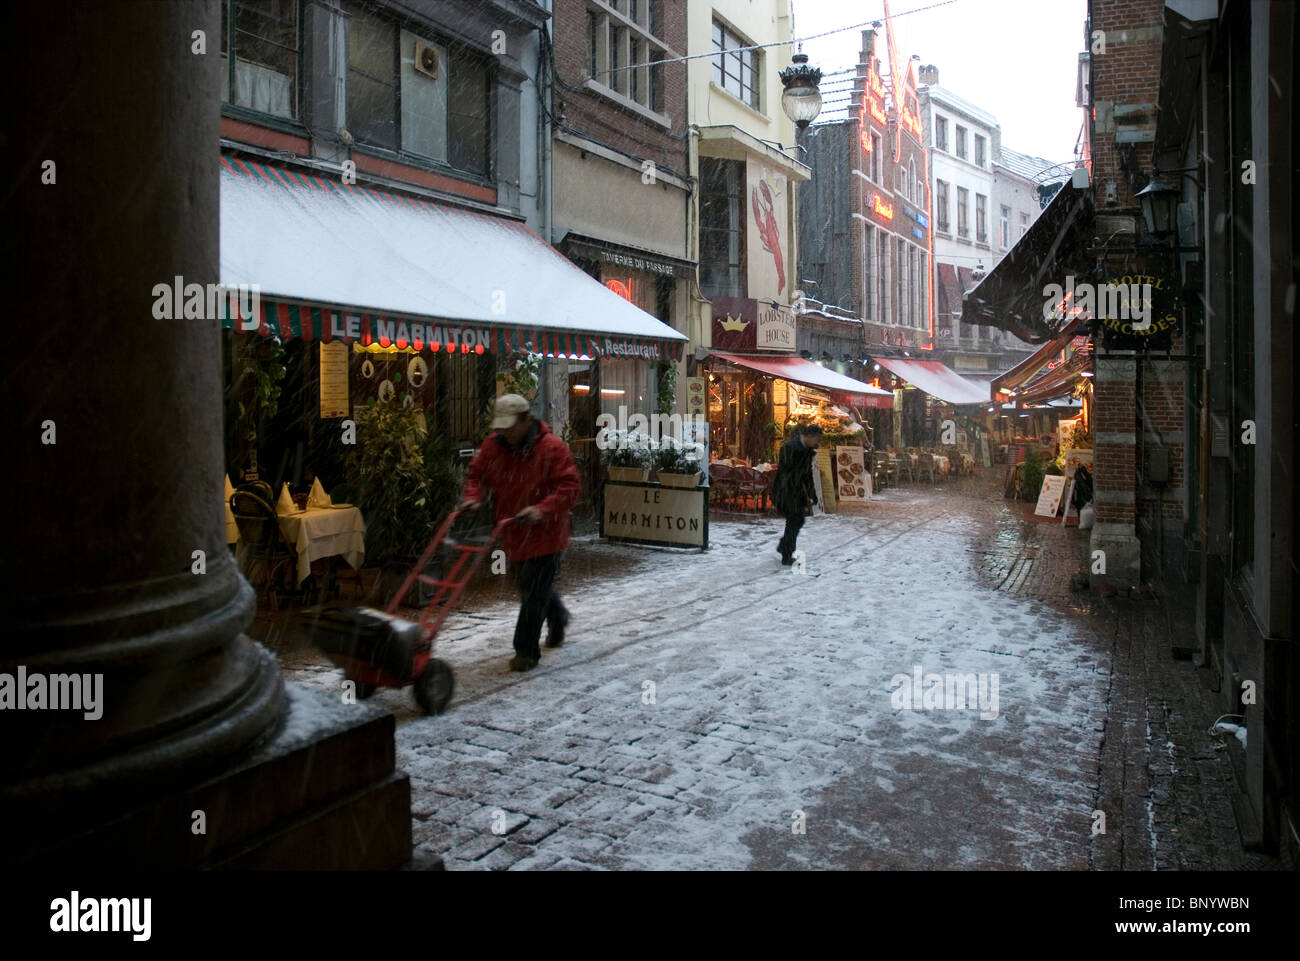 Rue des Bouchersstreet restaurants in Brussels under snow Stock Photo